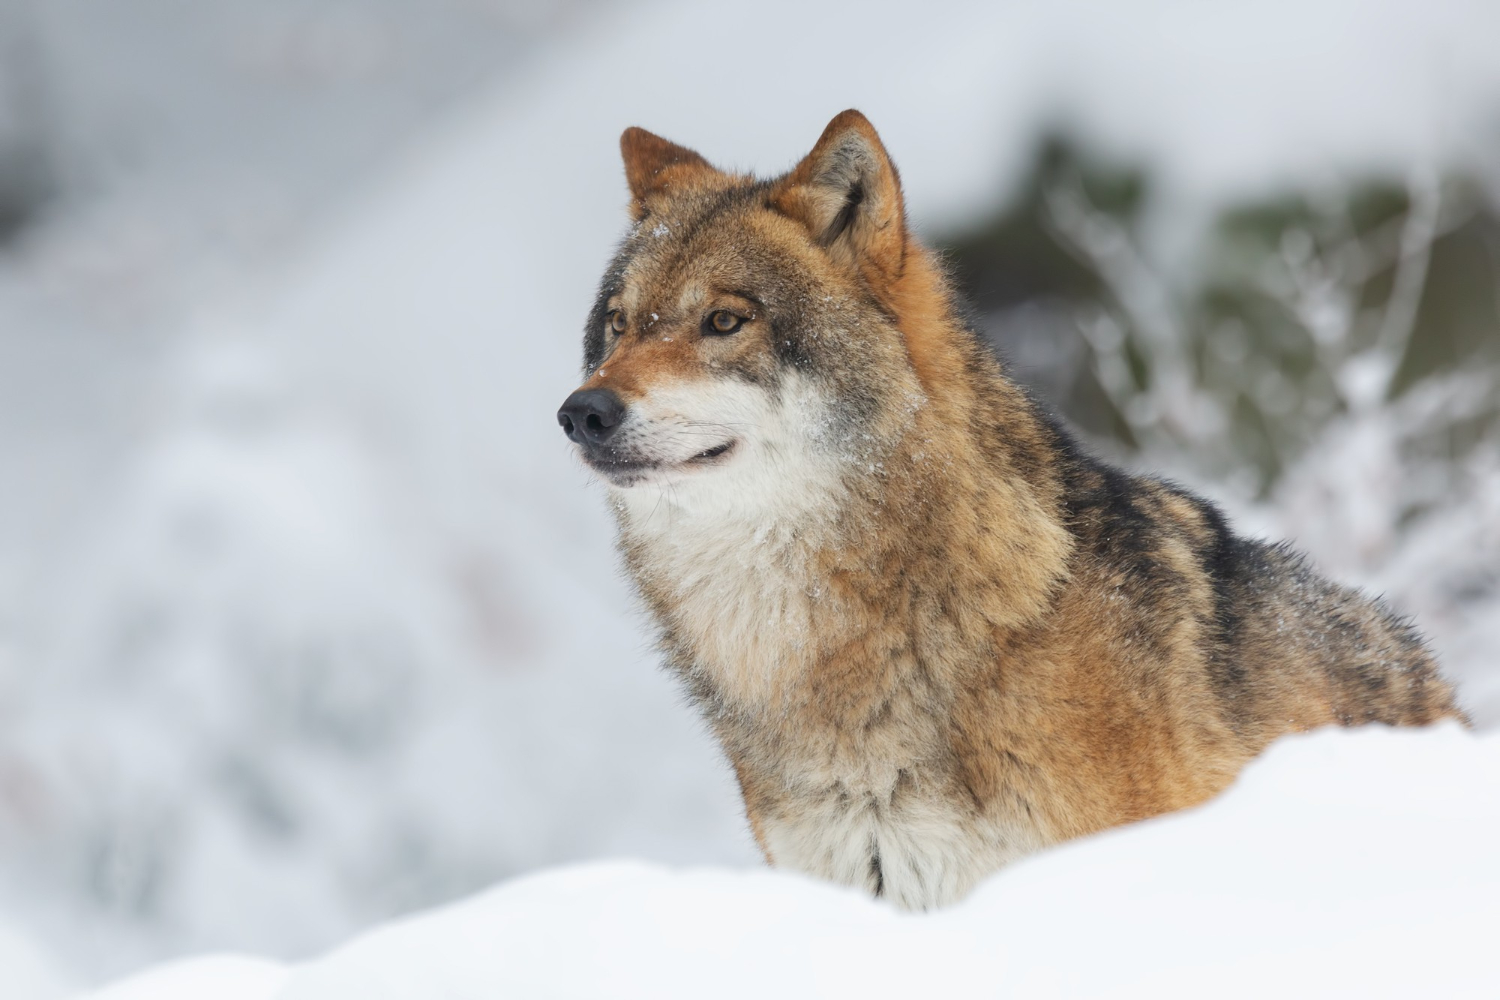 Uwaga na wilki w okolicy Międzyzdrojów: apel do mieszkańców i turystów